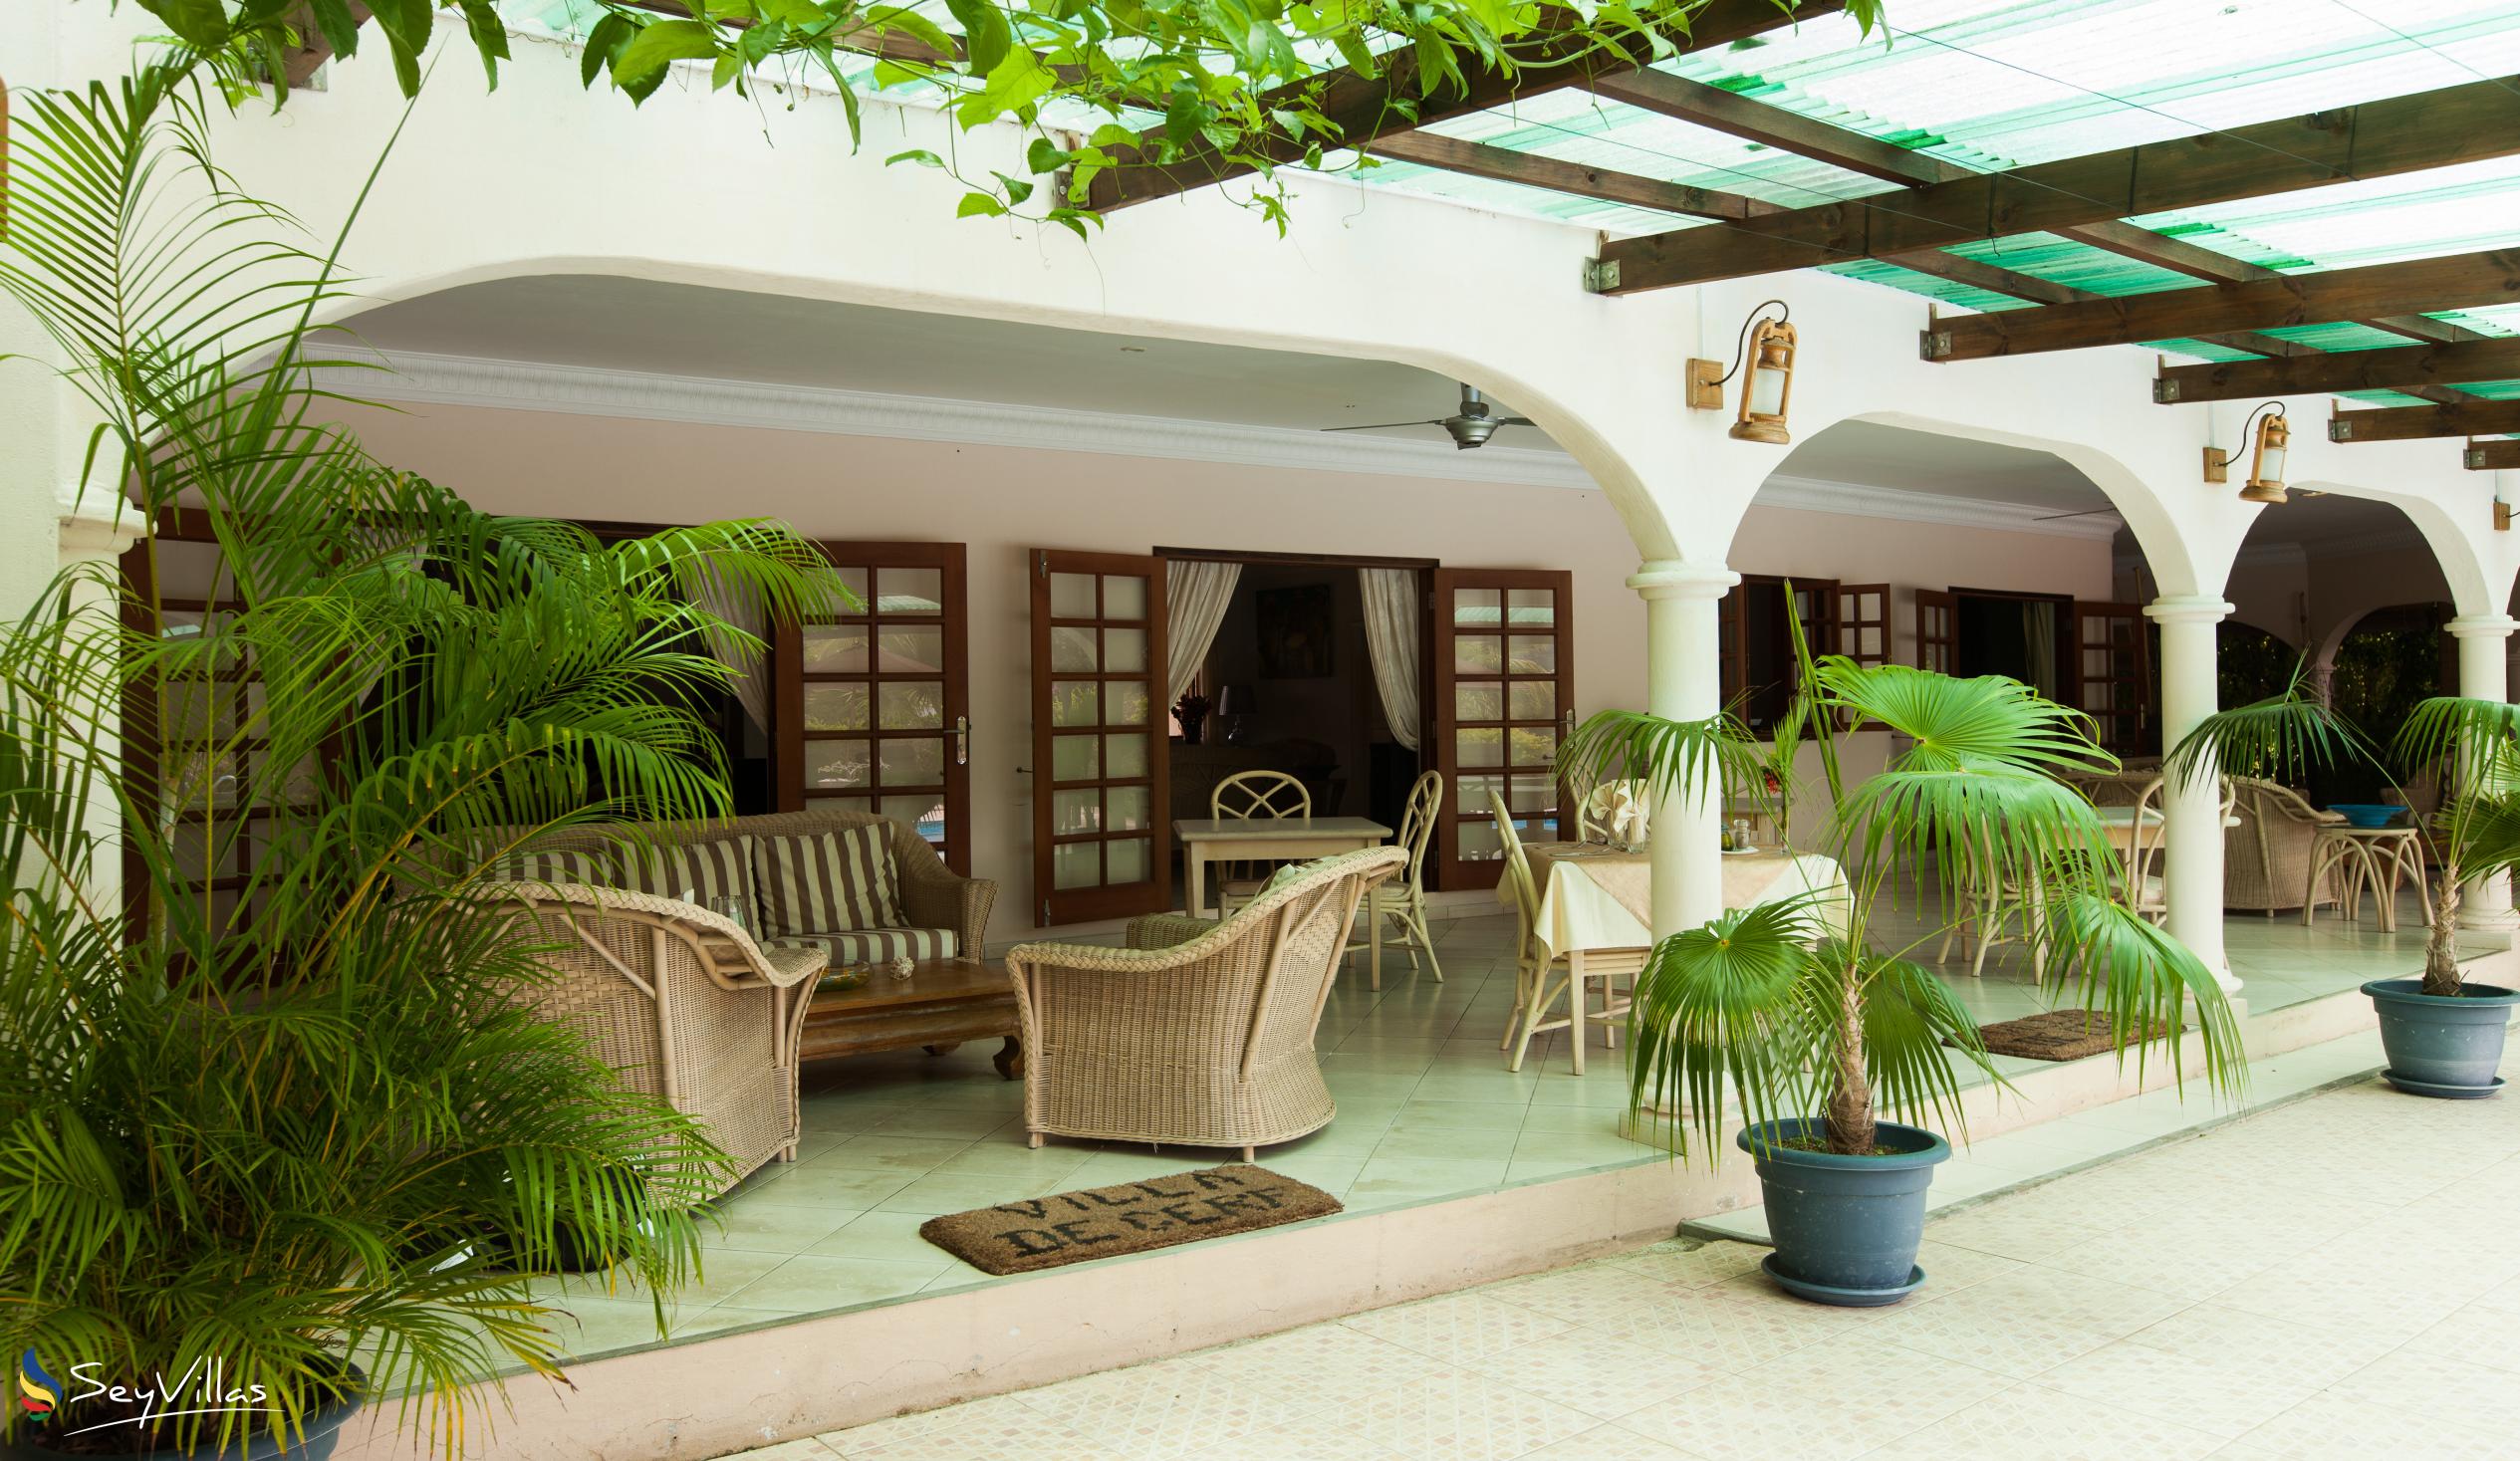 Photo 23: Villa de Cerf - Indoor area - Cerf Island (Seychelles)